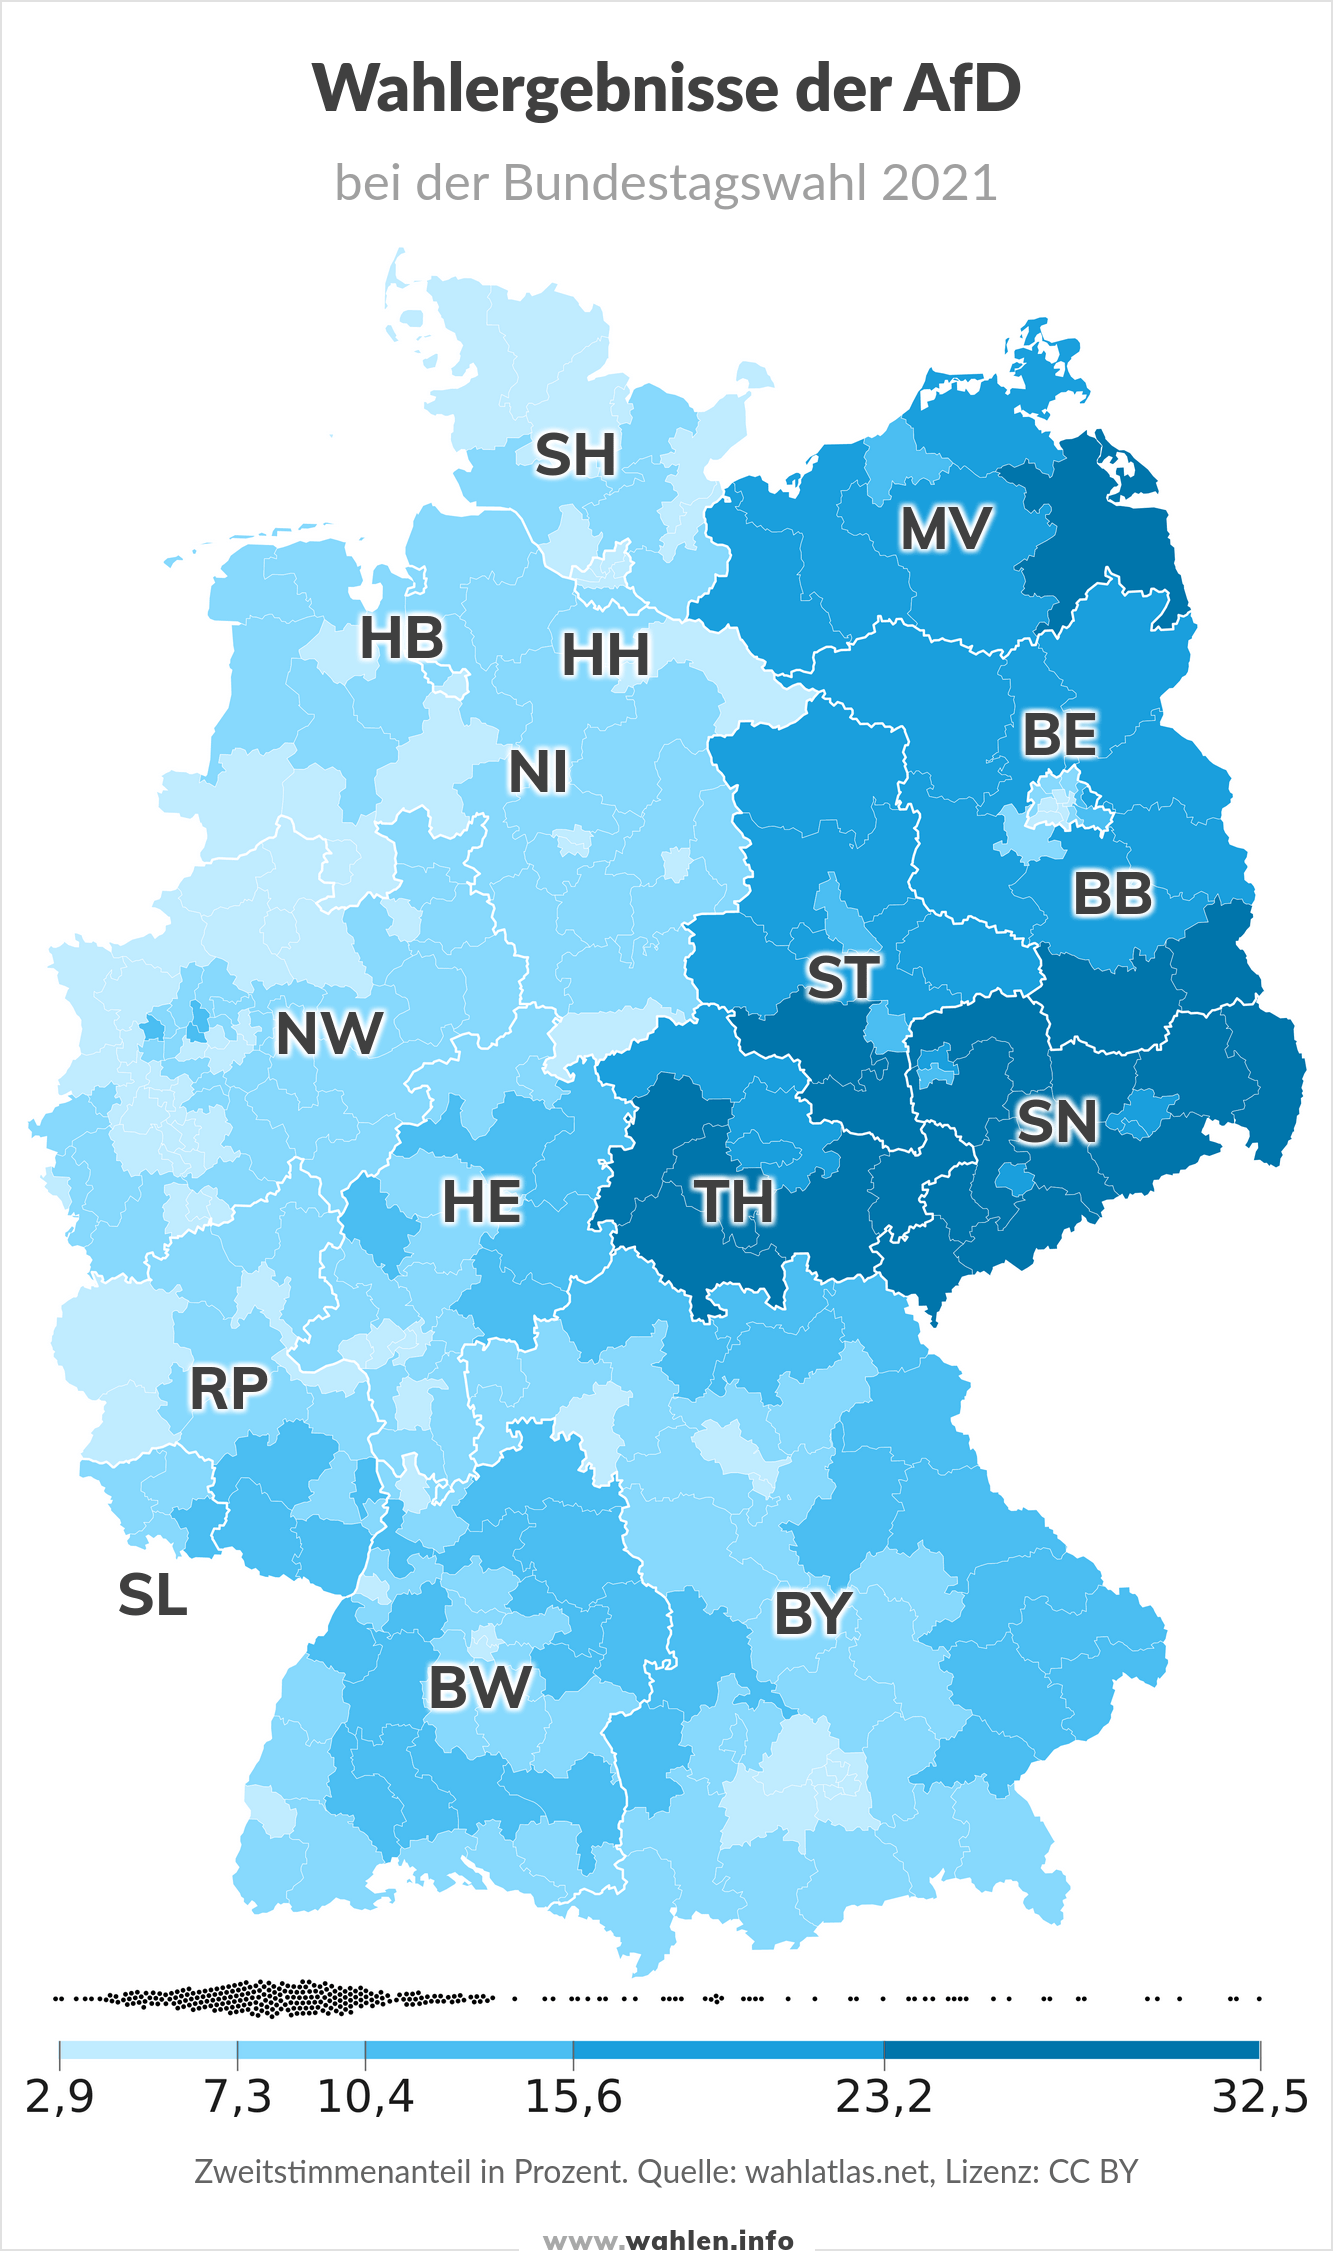 Bundestagswahl 2025 - Ergebnis der AfD bei der Bundestagswahl 2021 (Karte der Bundesländer) Quelle: wahlatlas.net